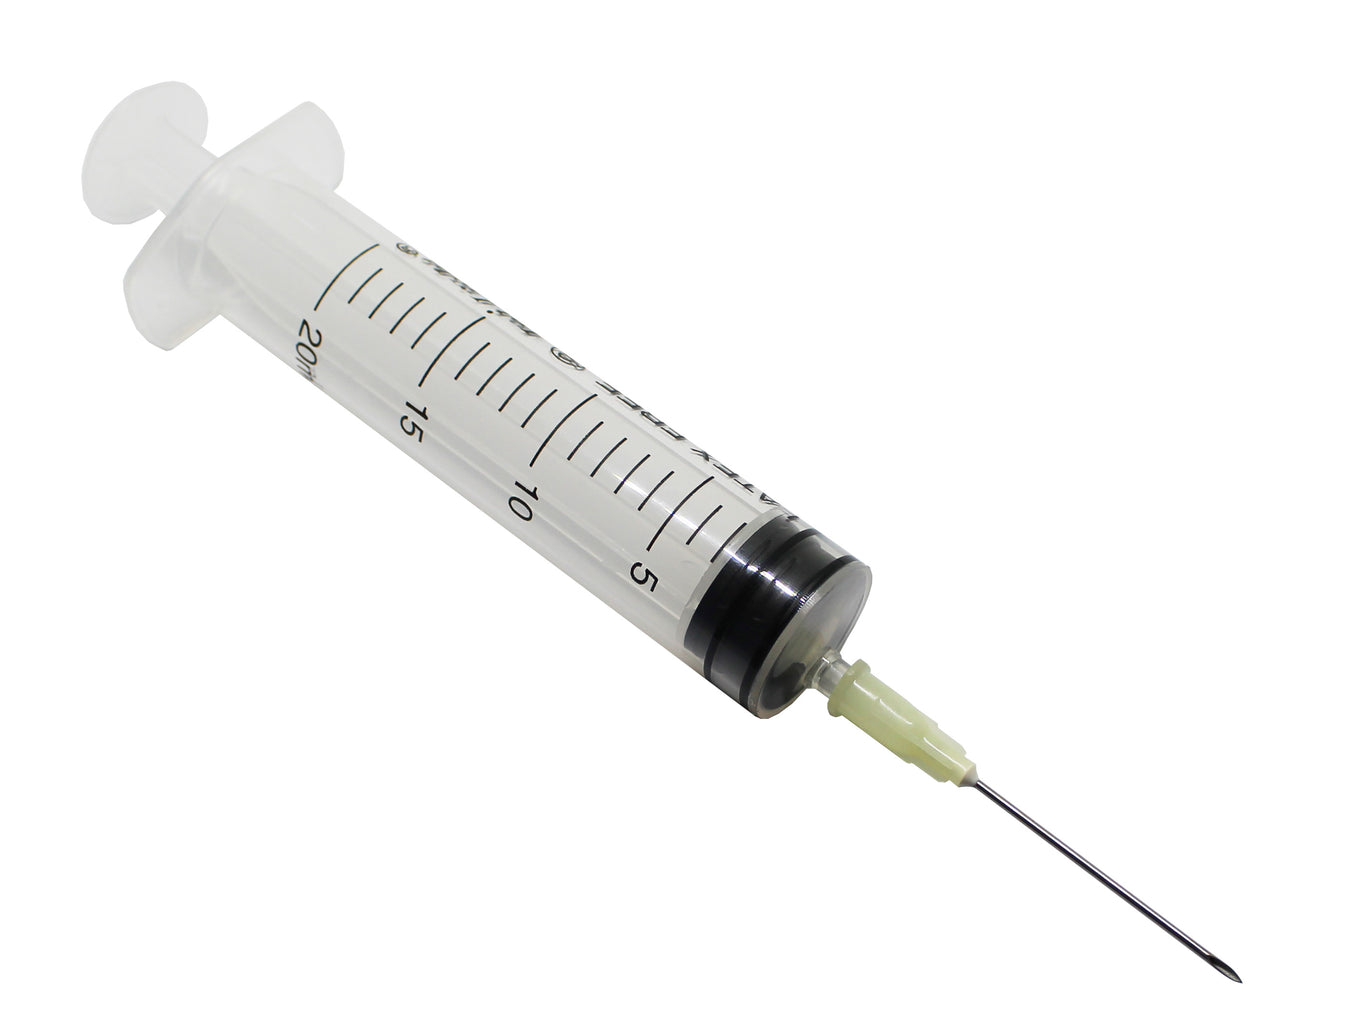 20ml syringe & needles combined